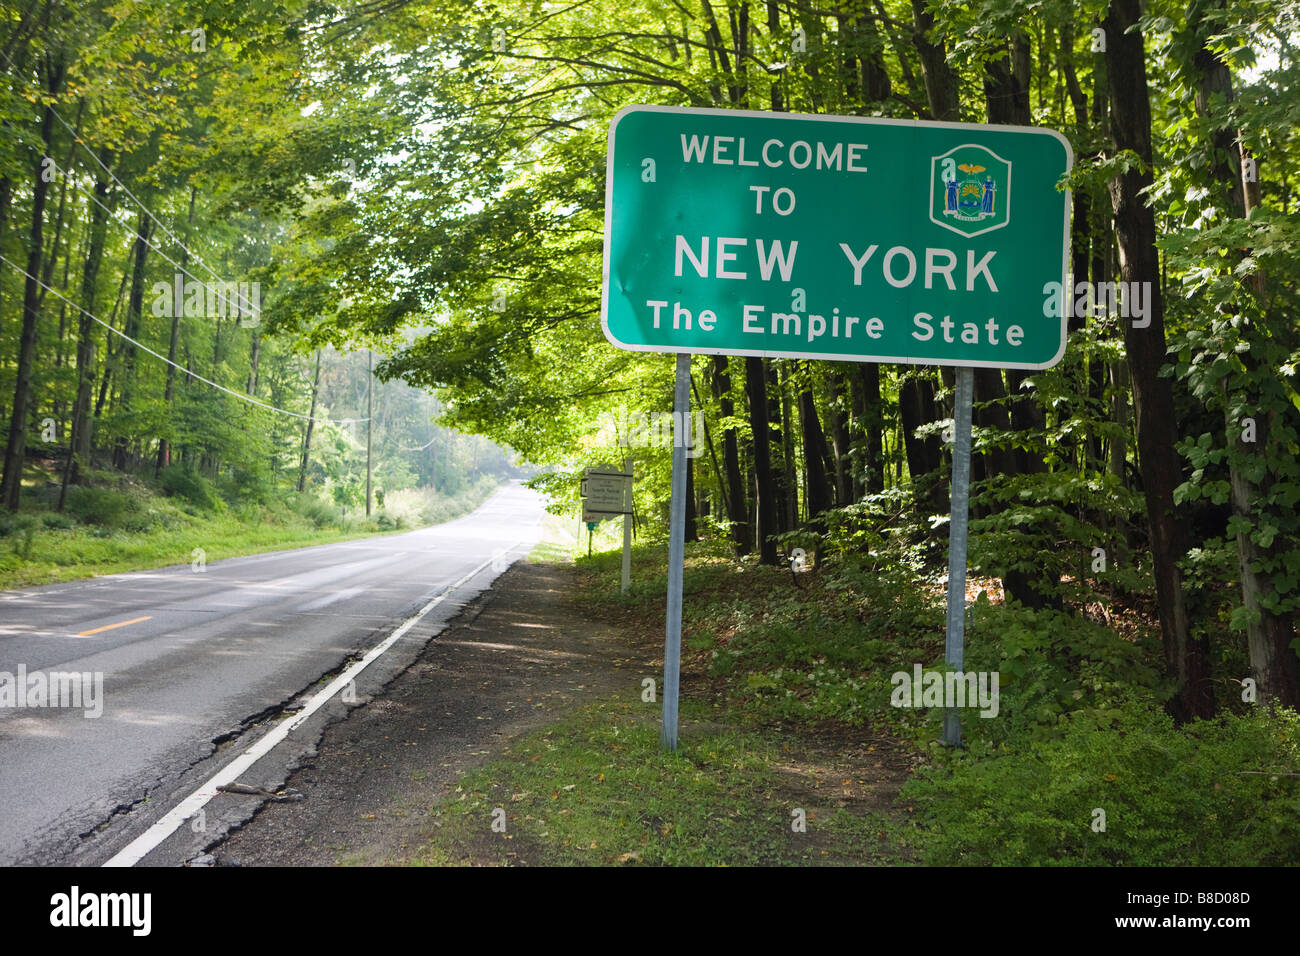 NY bienvenue panneau Bienvenue à New York l'Empire State Banque D'Images